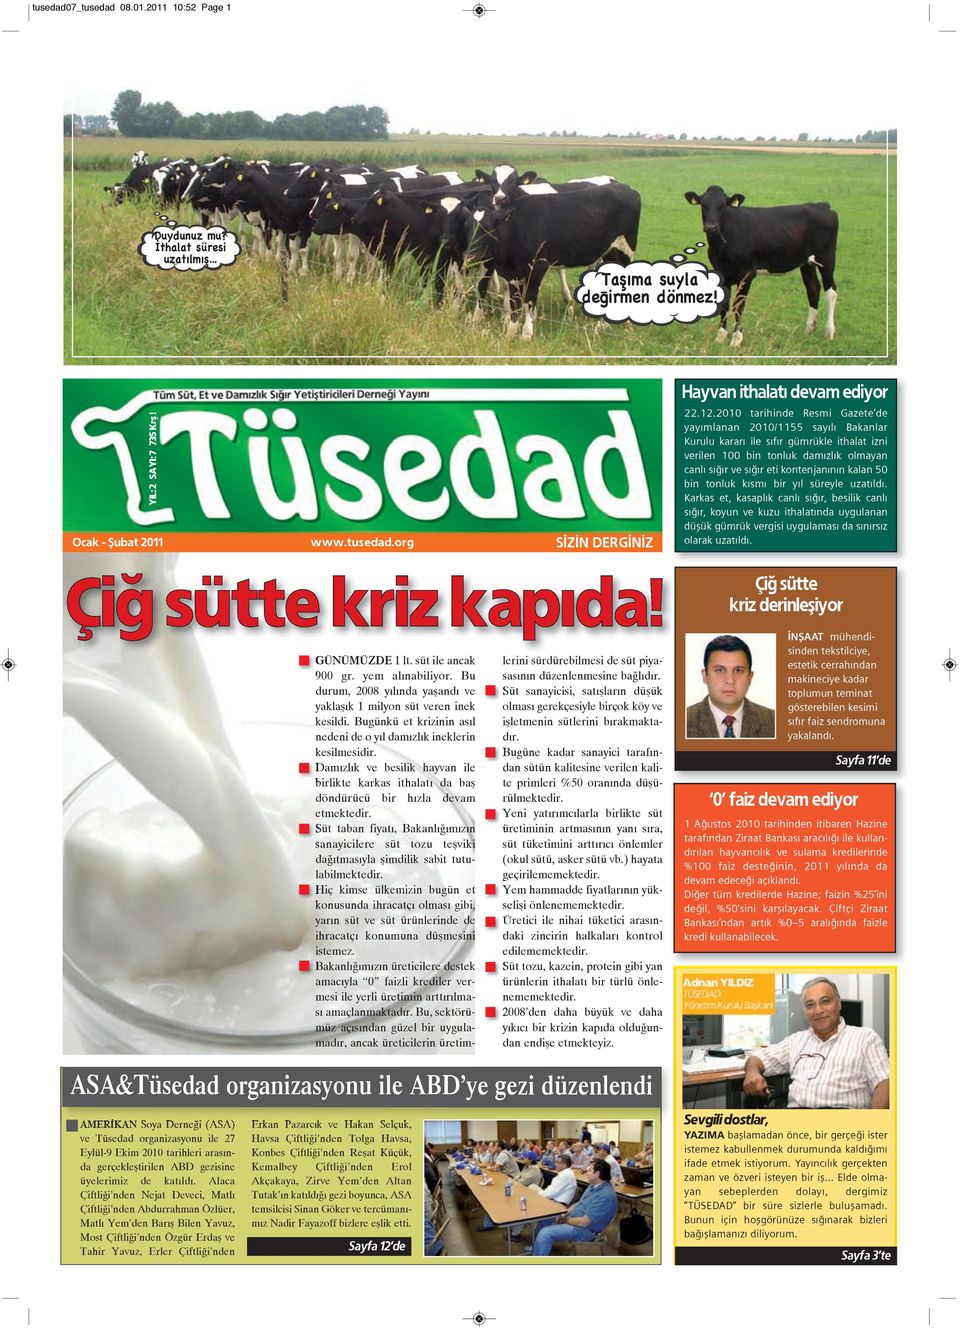 2010 tarihinde Resmi Gazete de yayımlanan 2010/1155 sayılı Bakanlar Kurulu kararı ile sıfır gümrükle ithalat izni verilen 100 bin tonluk damızlık olmayan canlı sığır ve sığır eti kontenjanının kalan